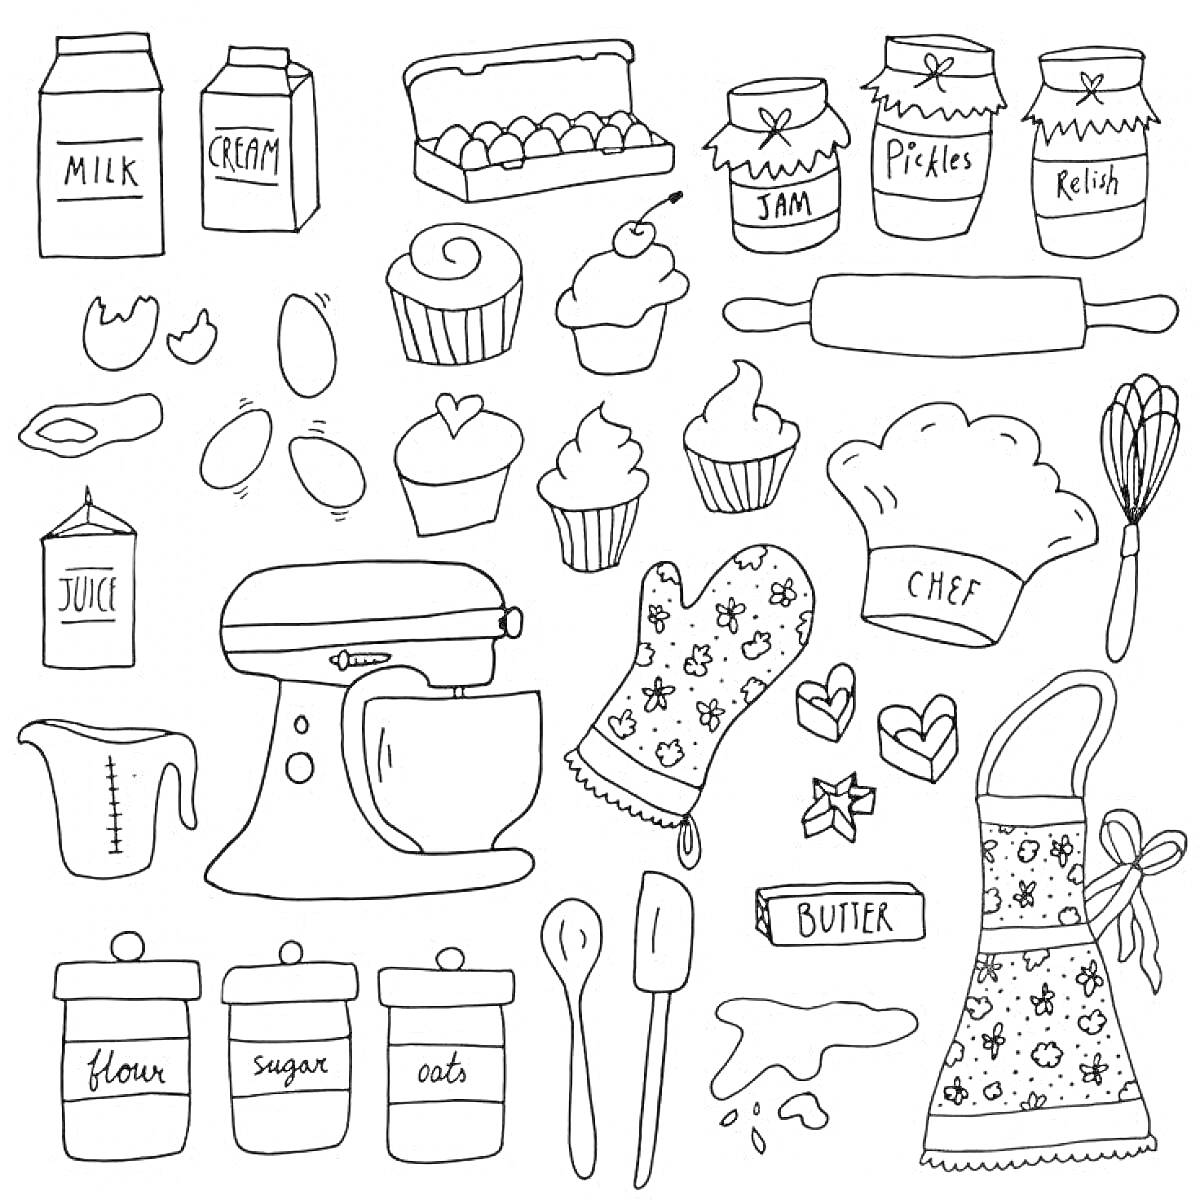 Раскраска кухонная утварь и ингредиенты: молоко, сливки, яйца, джем, маринованные огурцы, желе, сок, мультиварка, венчик, перчатка повара, торт, кексы, половник, фартук, мука, сахар, овсянка, масло